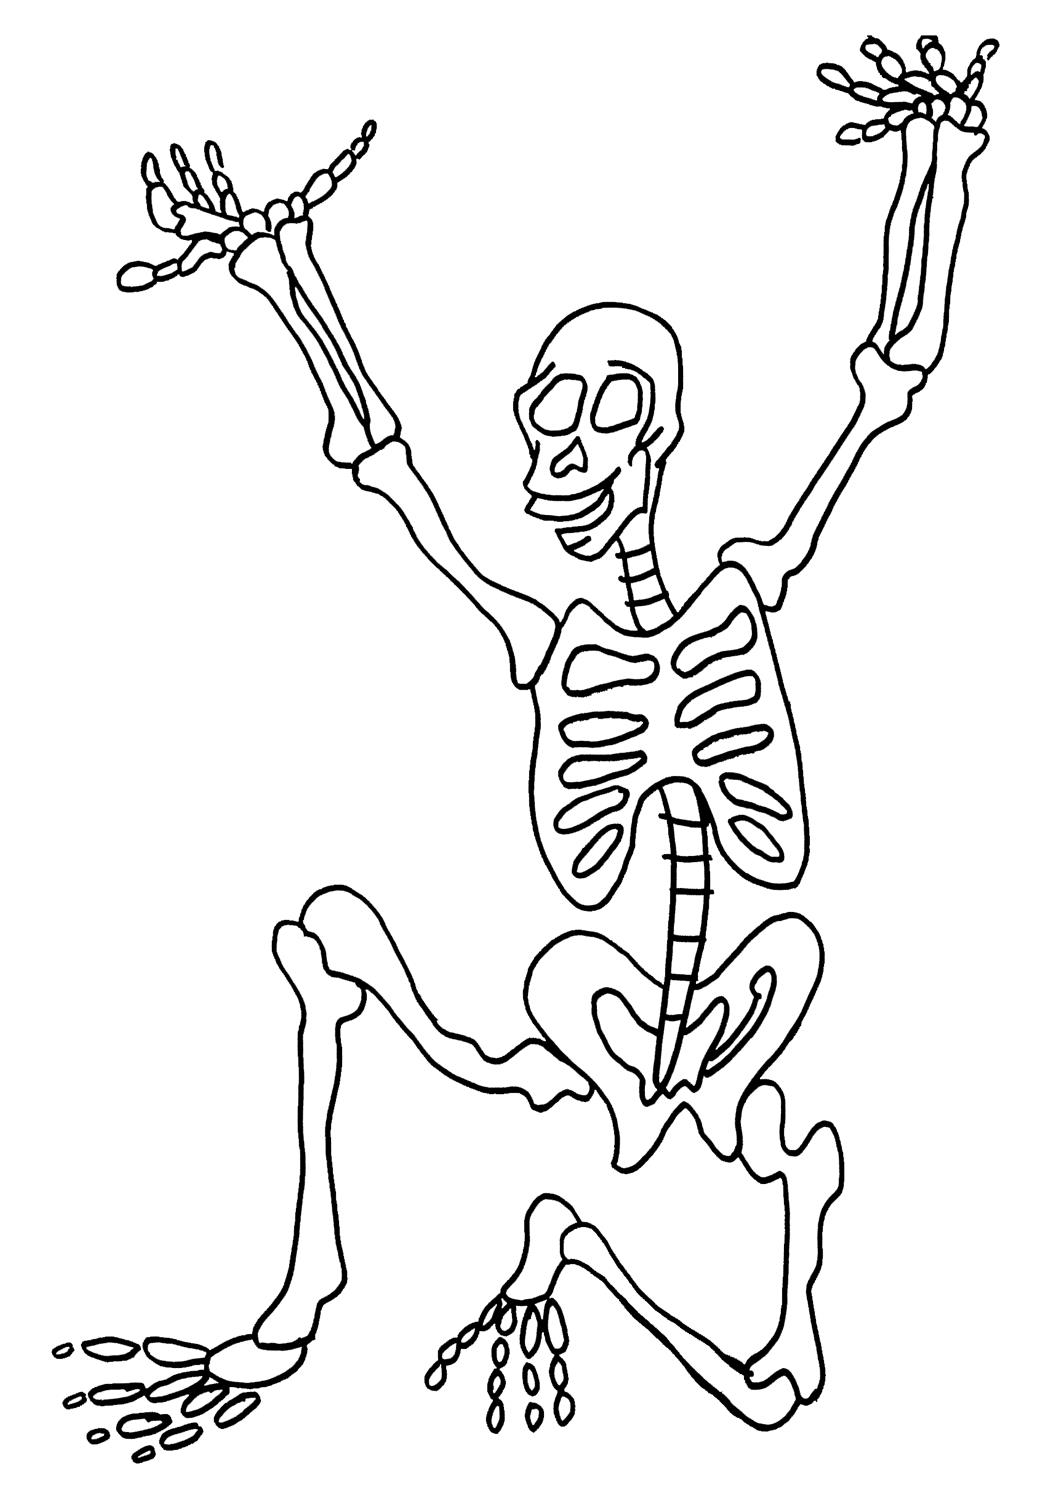 Скелет присел и вытянул руки вверх - раскраски для мальчиков бесплатно (скелет)